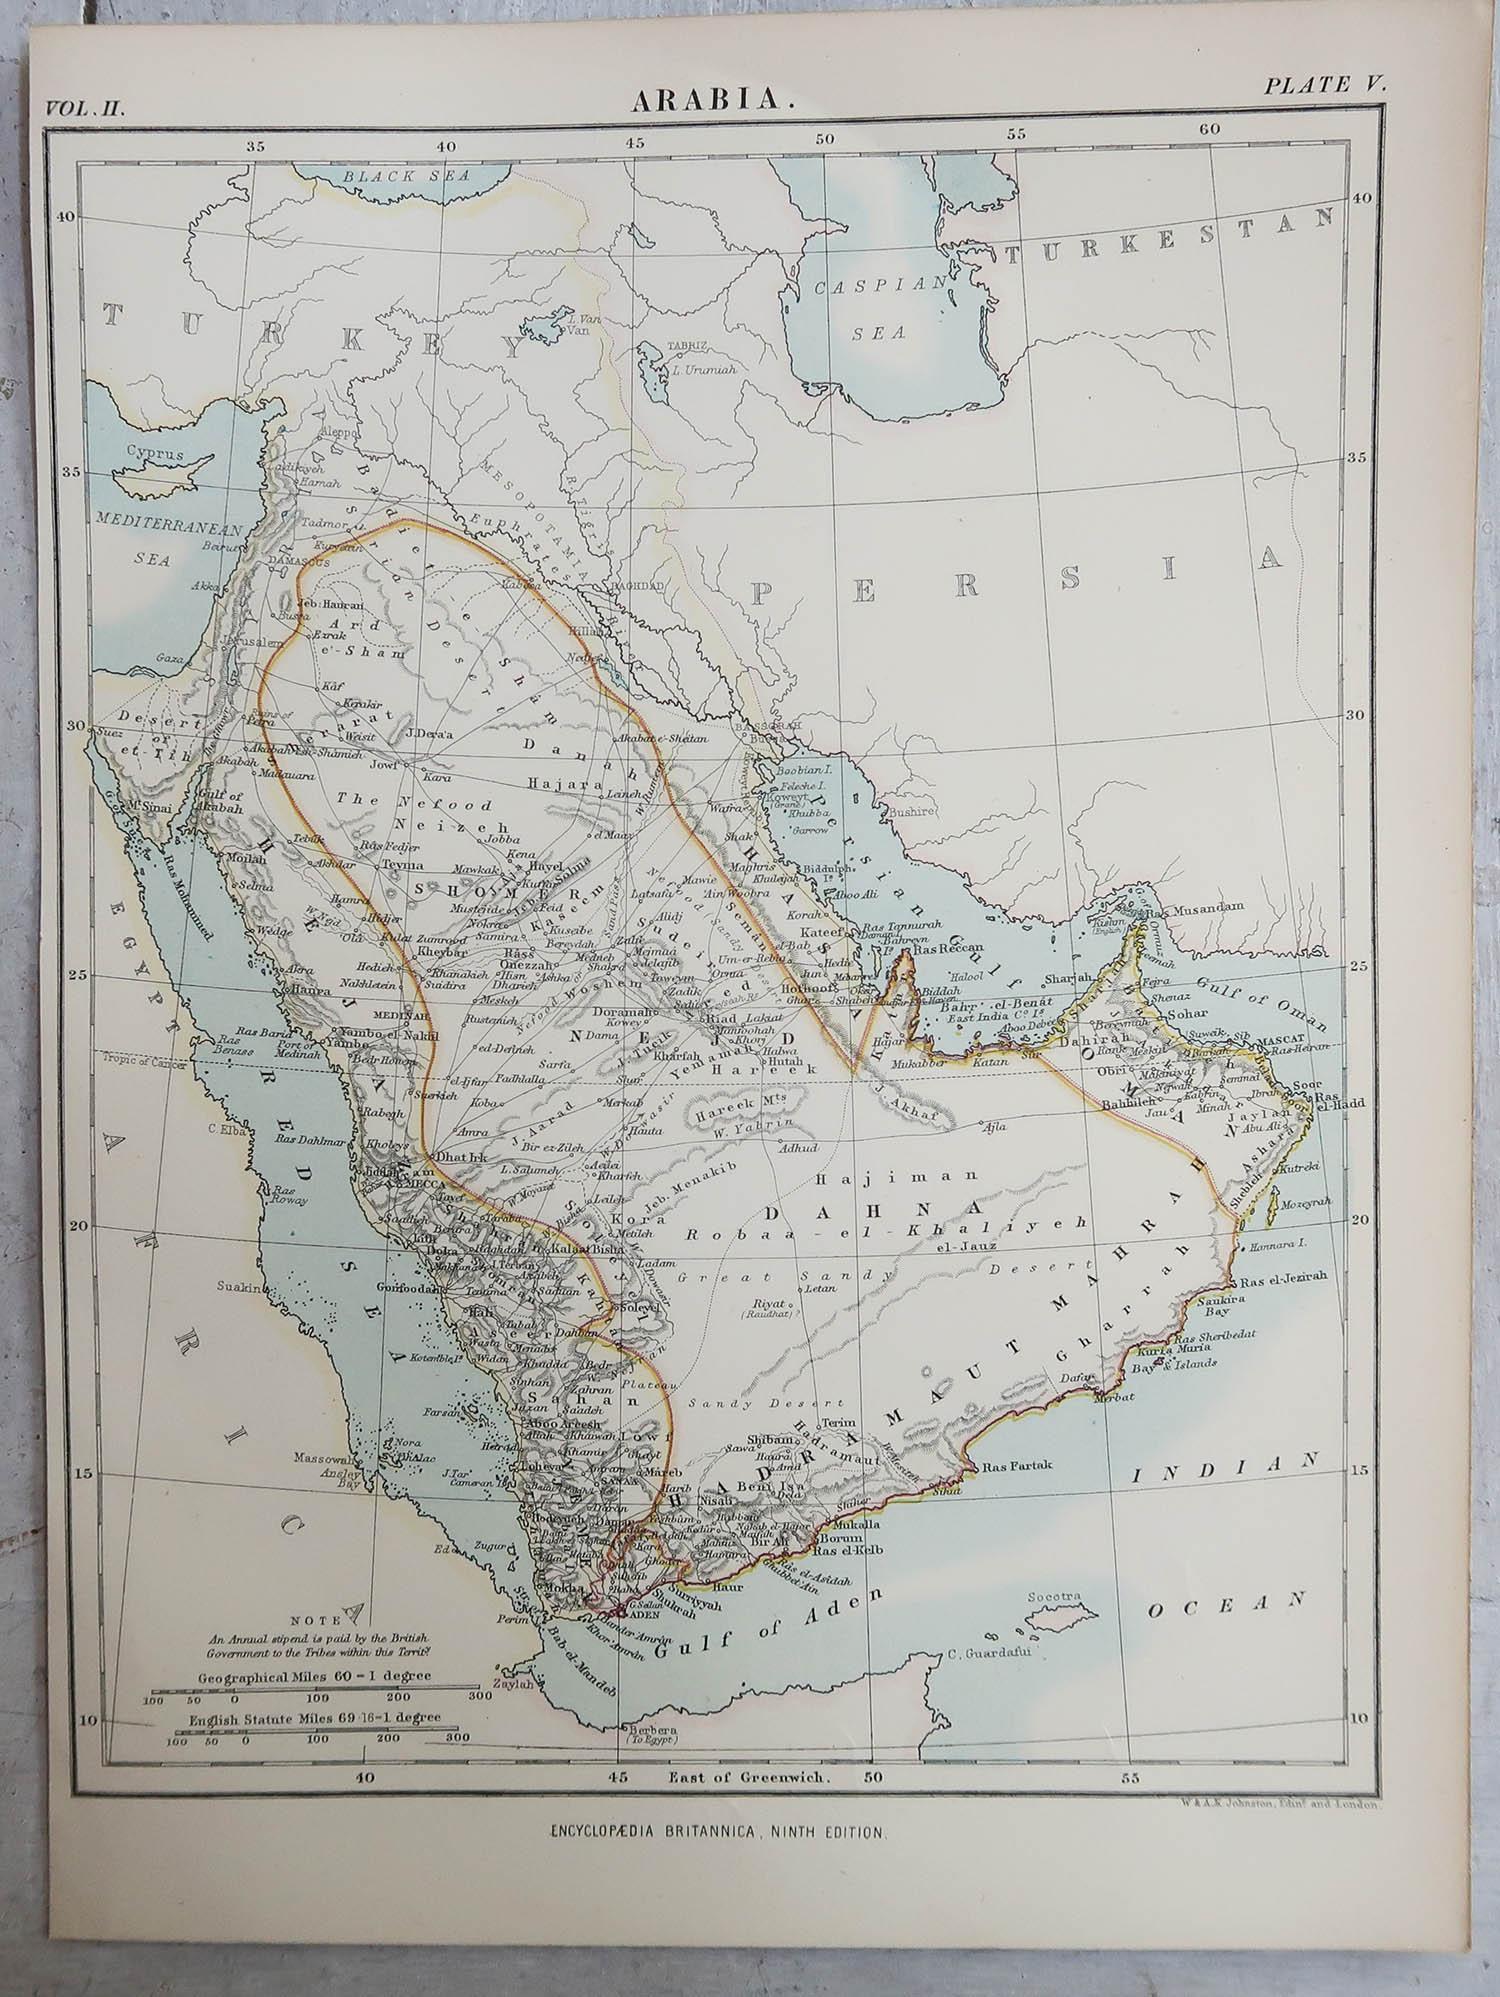 Other Original Antique Map of Saudi Arabia, 1889